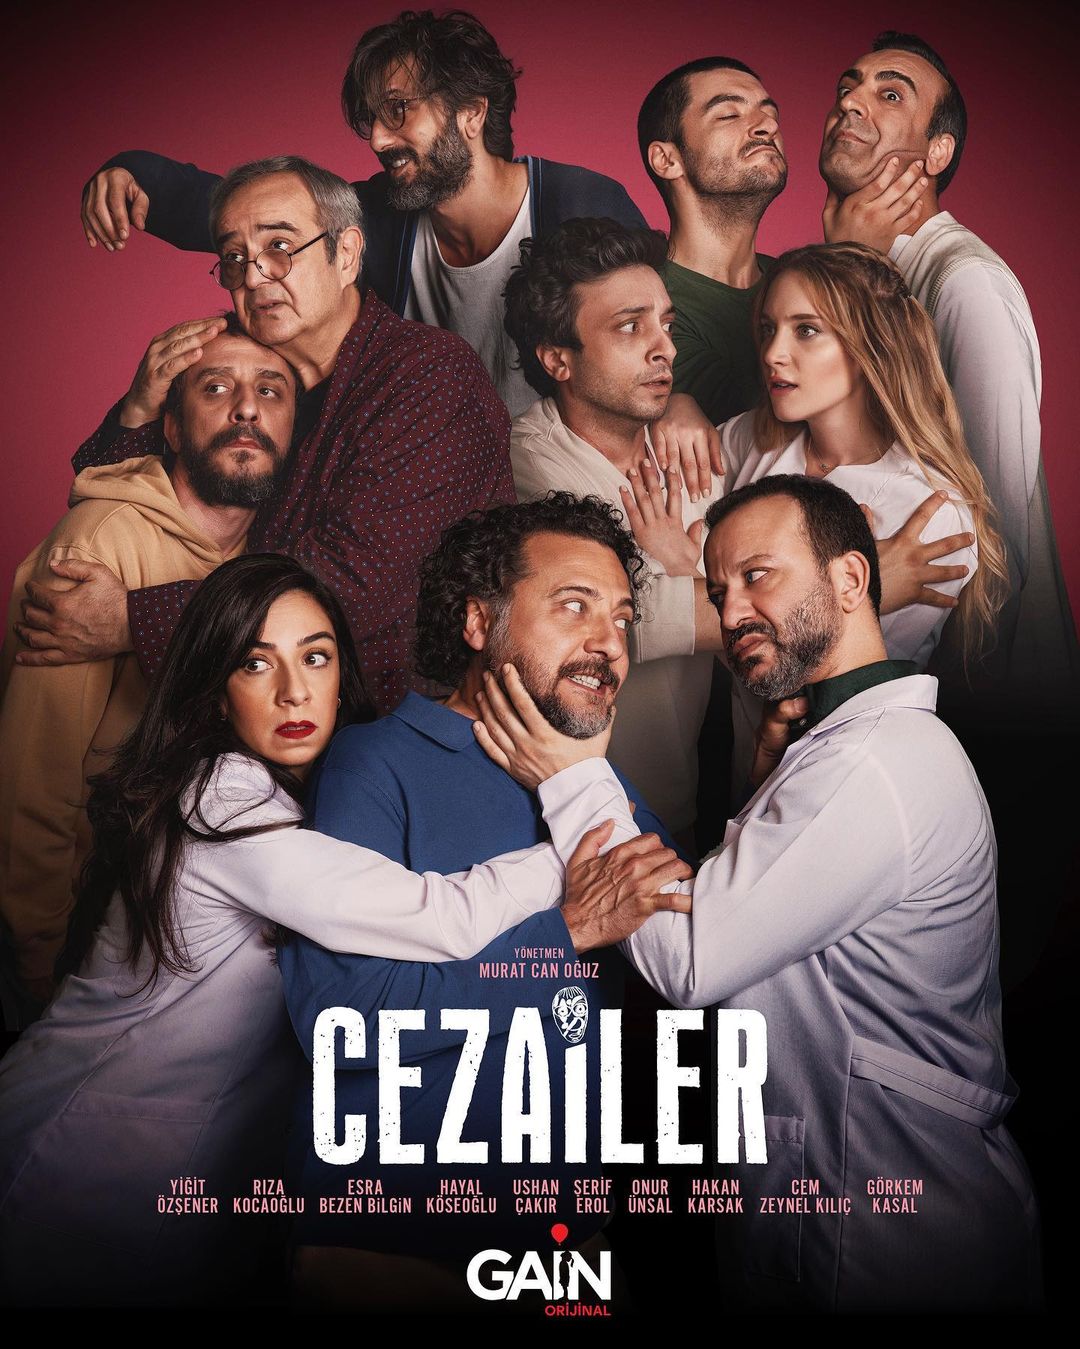 TV ratings for Cezailer in Denmark. Gain TV series